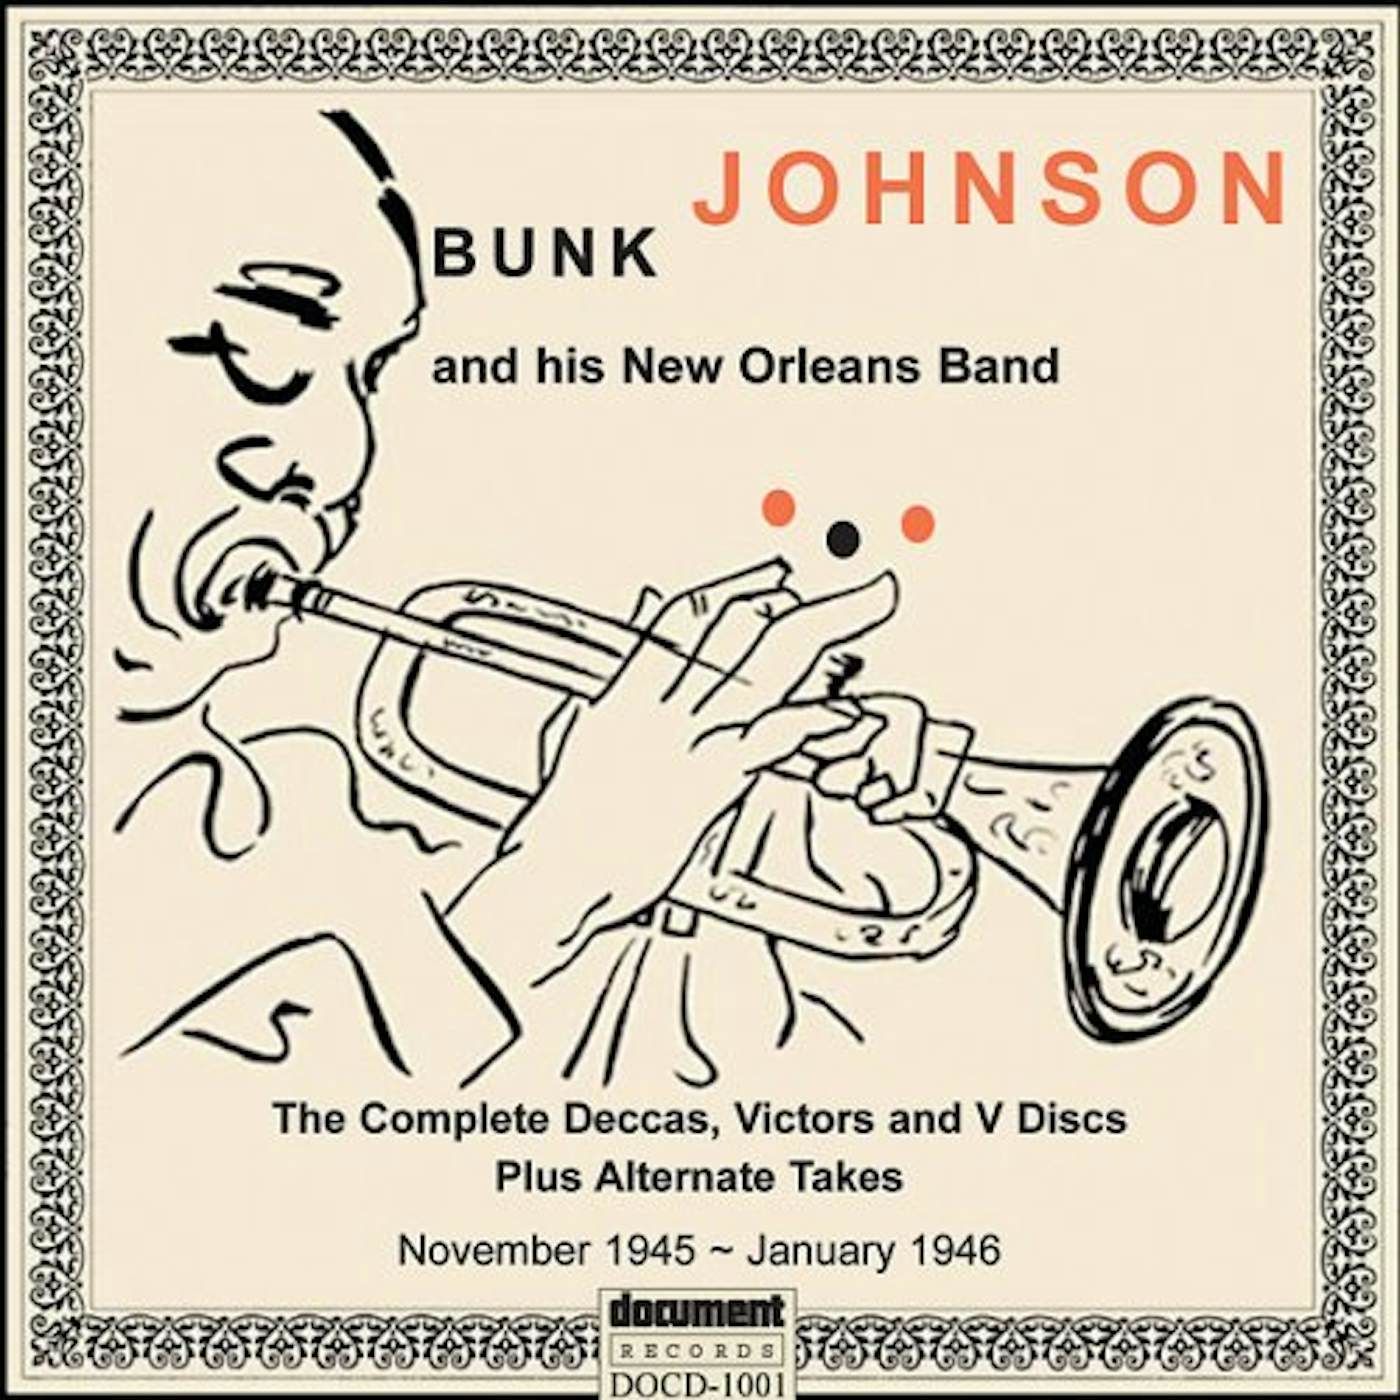 Bunk Johnson 1945-1946 COMPL DECCAS VICTORS & V DISCS CD